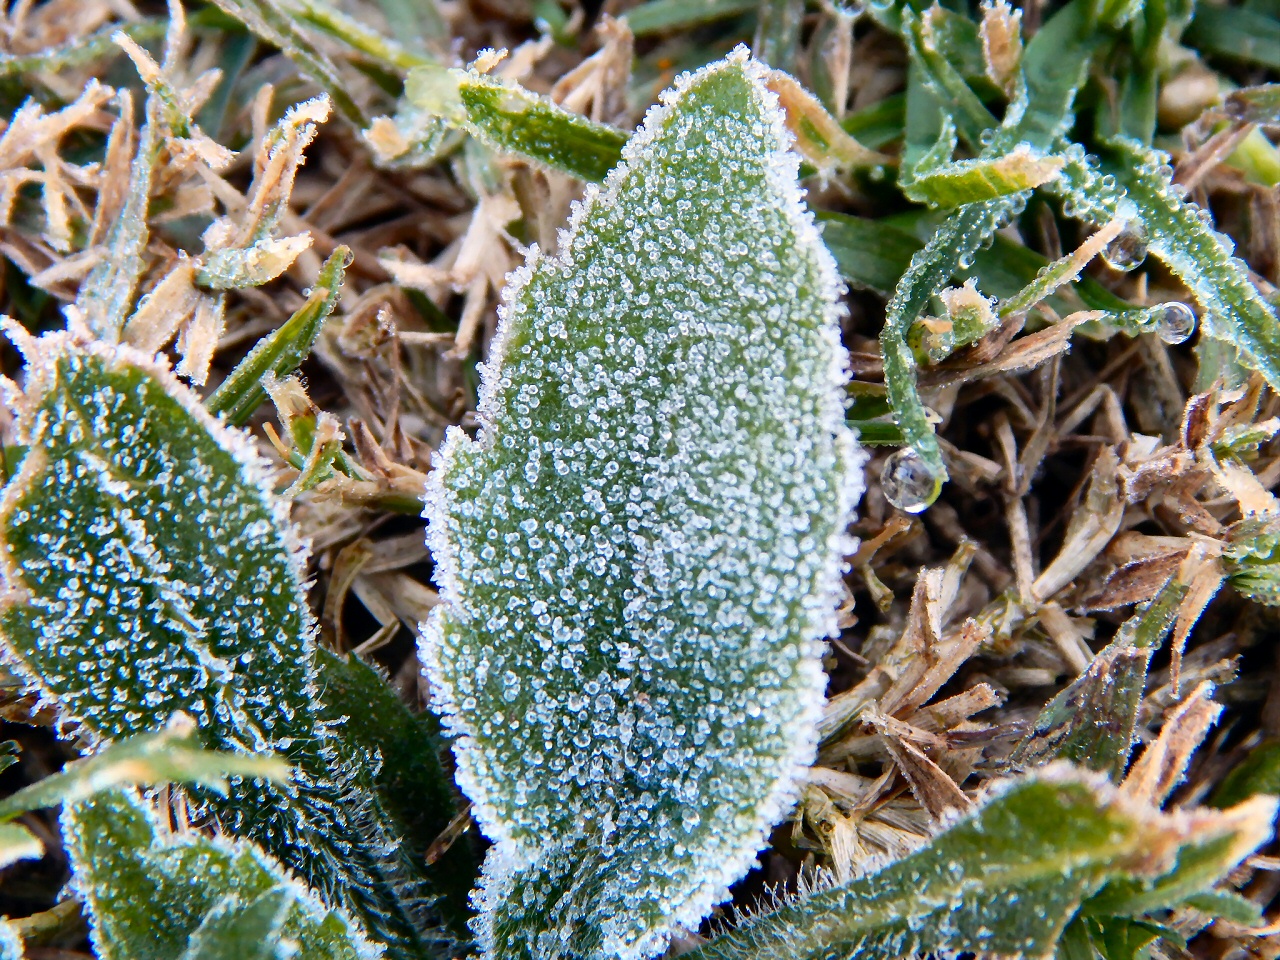 ¿Sal gruesa? Los pequeños cristales de hielo recuerdan a la sal gruesa sobre las plantas en una fría mañana (Gustavo Demaria).